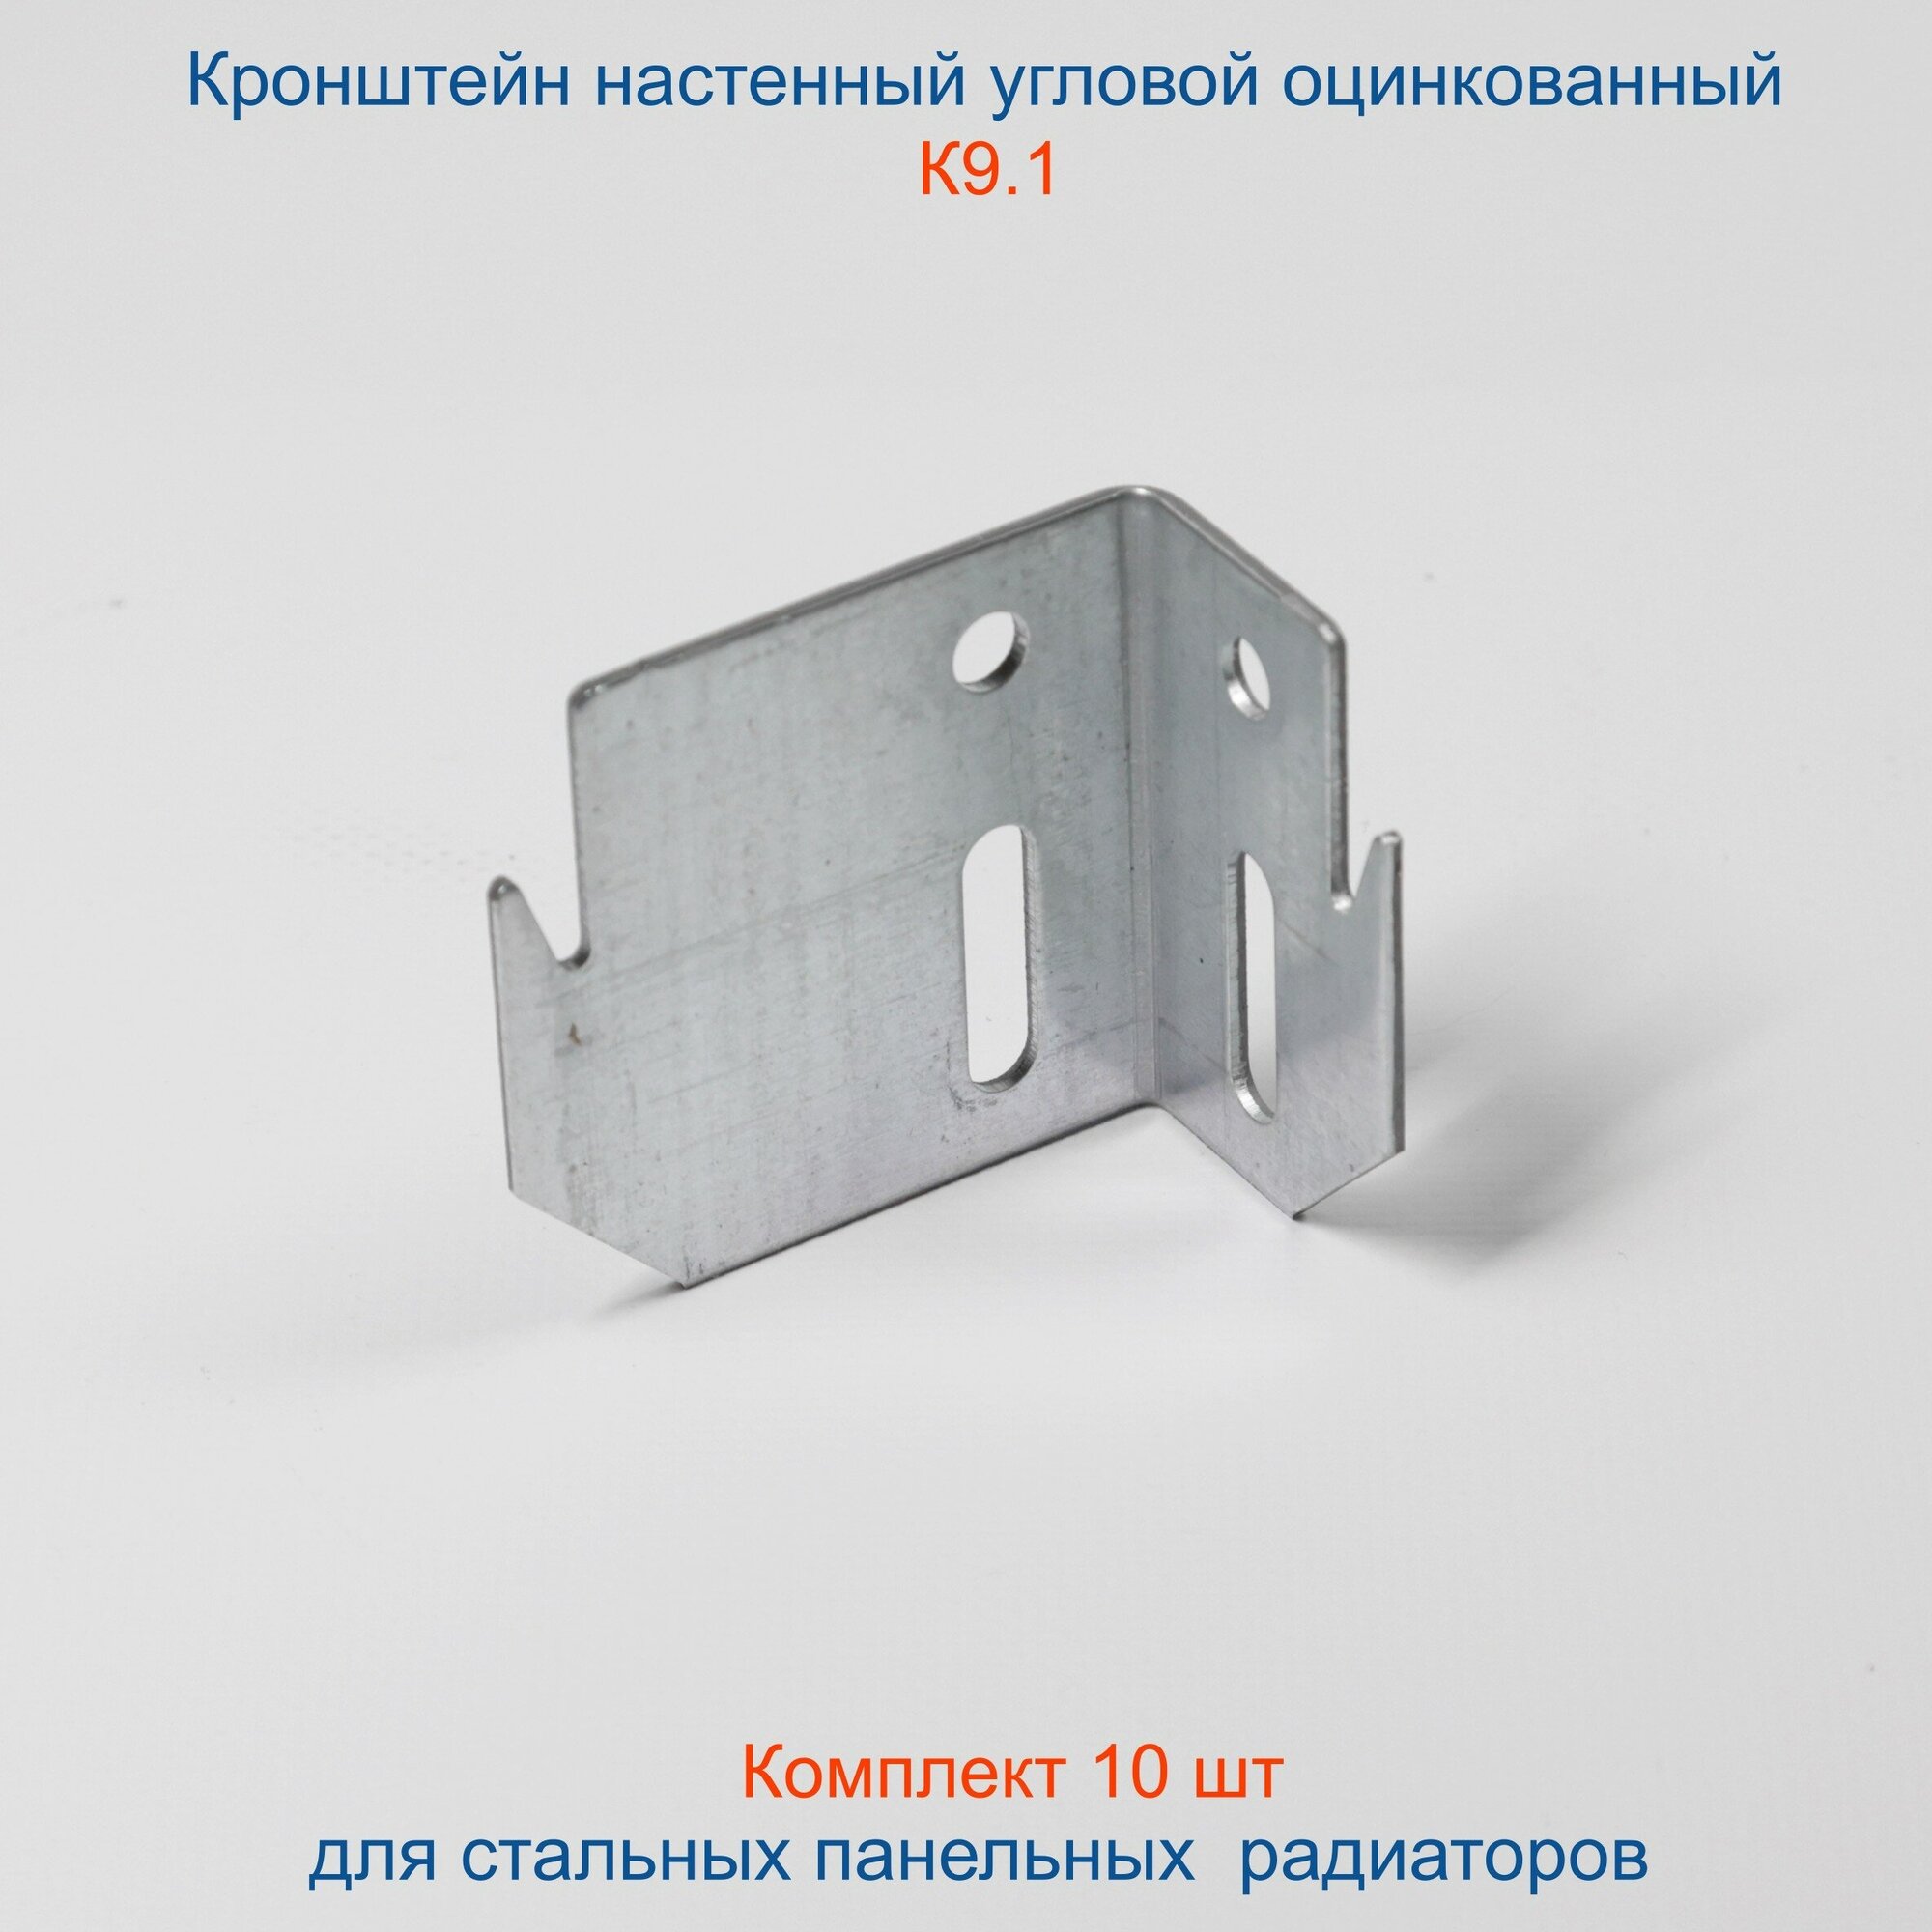 Кронштейн угловой Кайрос для стальных панельных радиаторов оцинкованный К9.1, комплект 10 шт